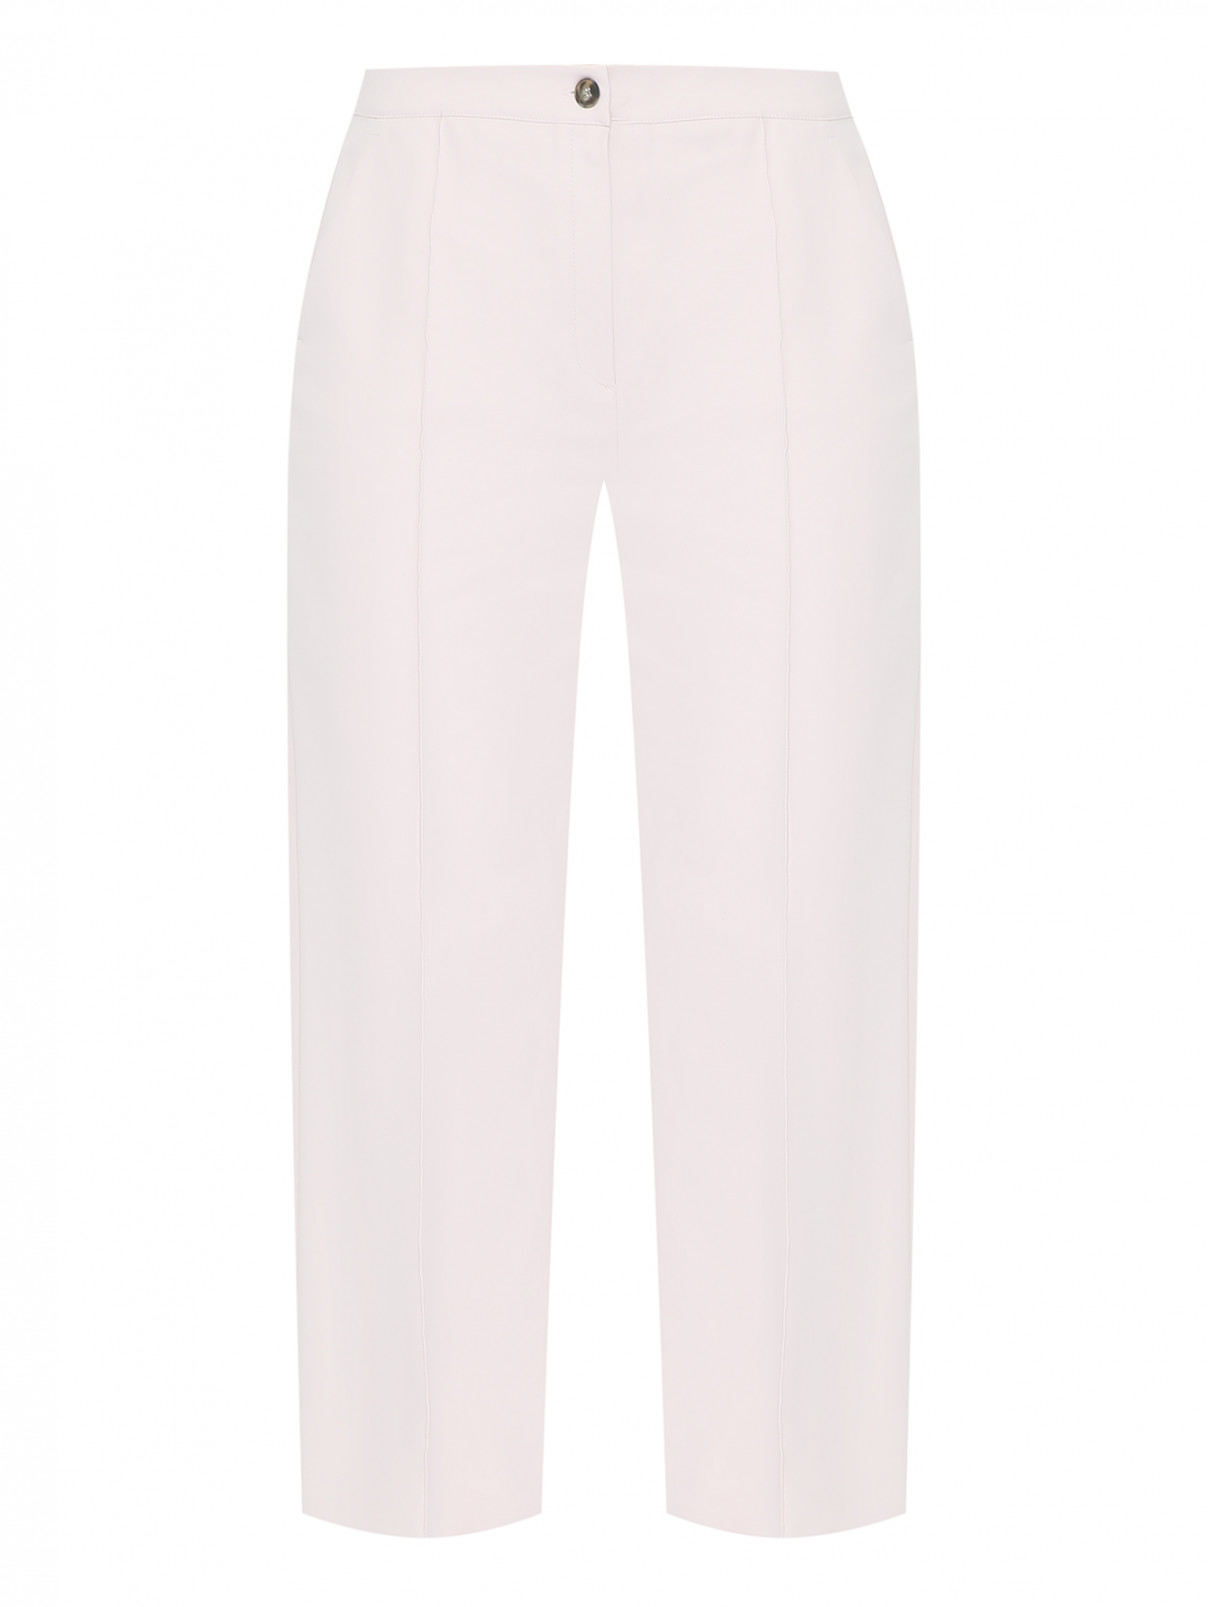 Прямые брюки со стрелками Marina Rinaldi  –  Общий вид  – Цвет:  Розовый